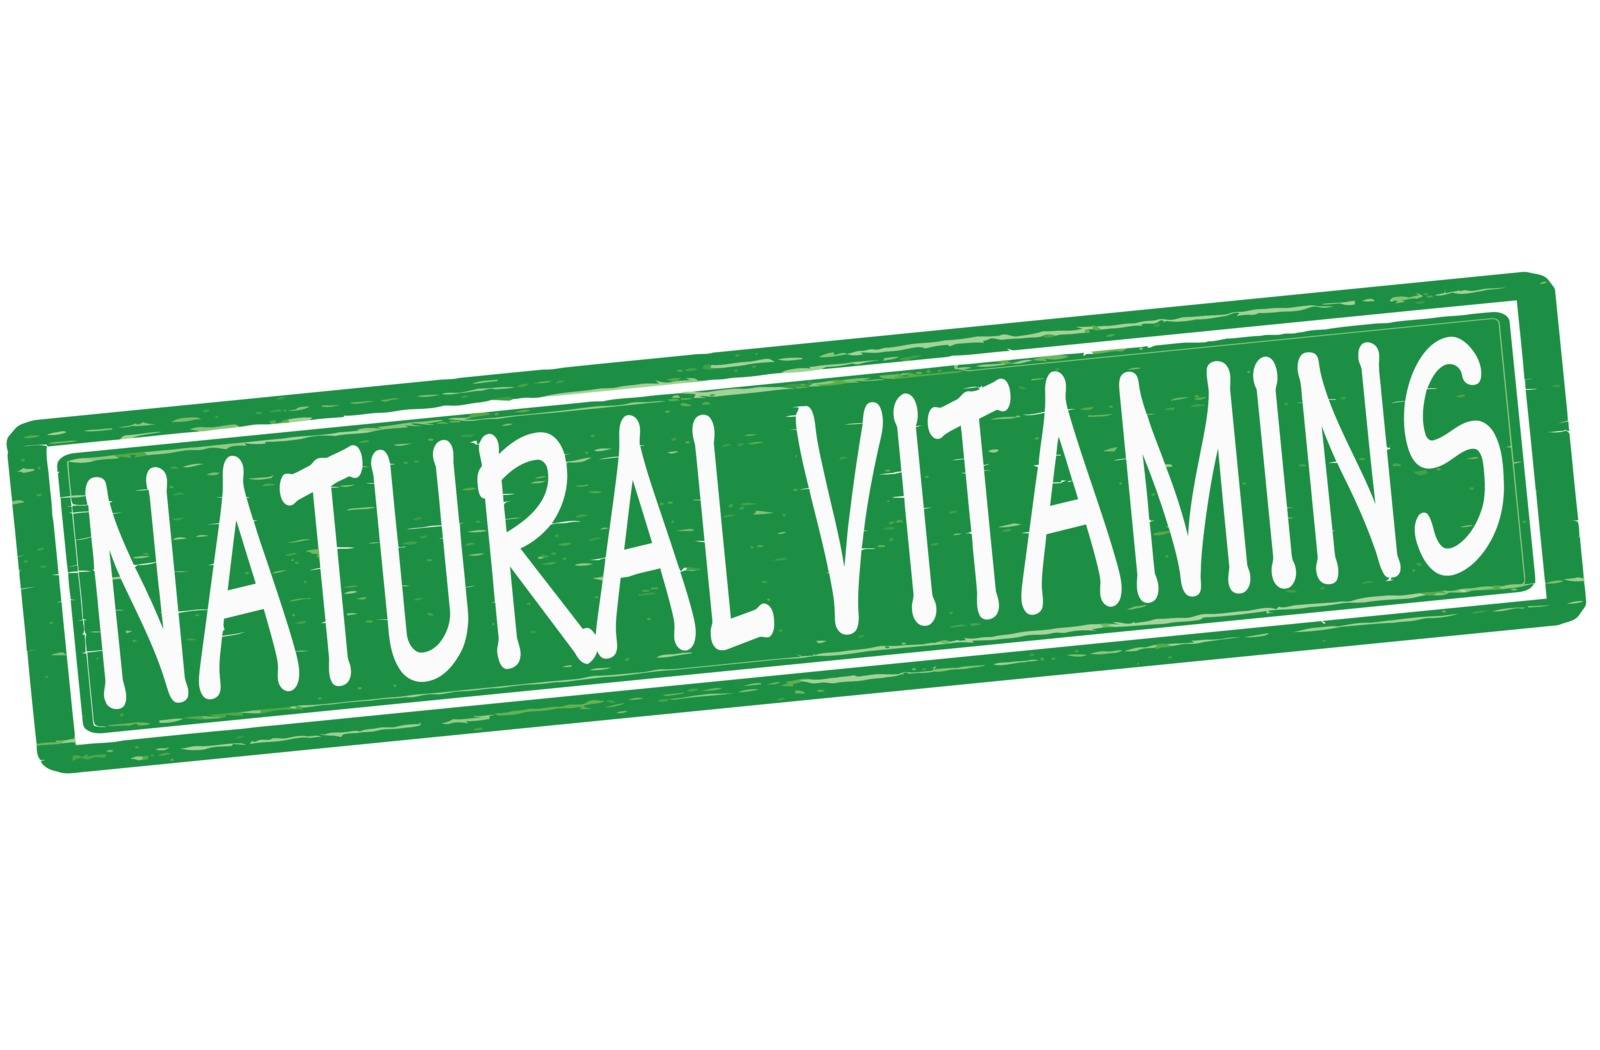 Natural vitamins by carmenbobo